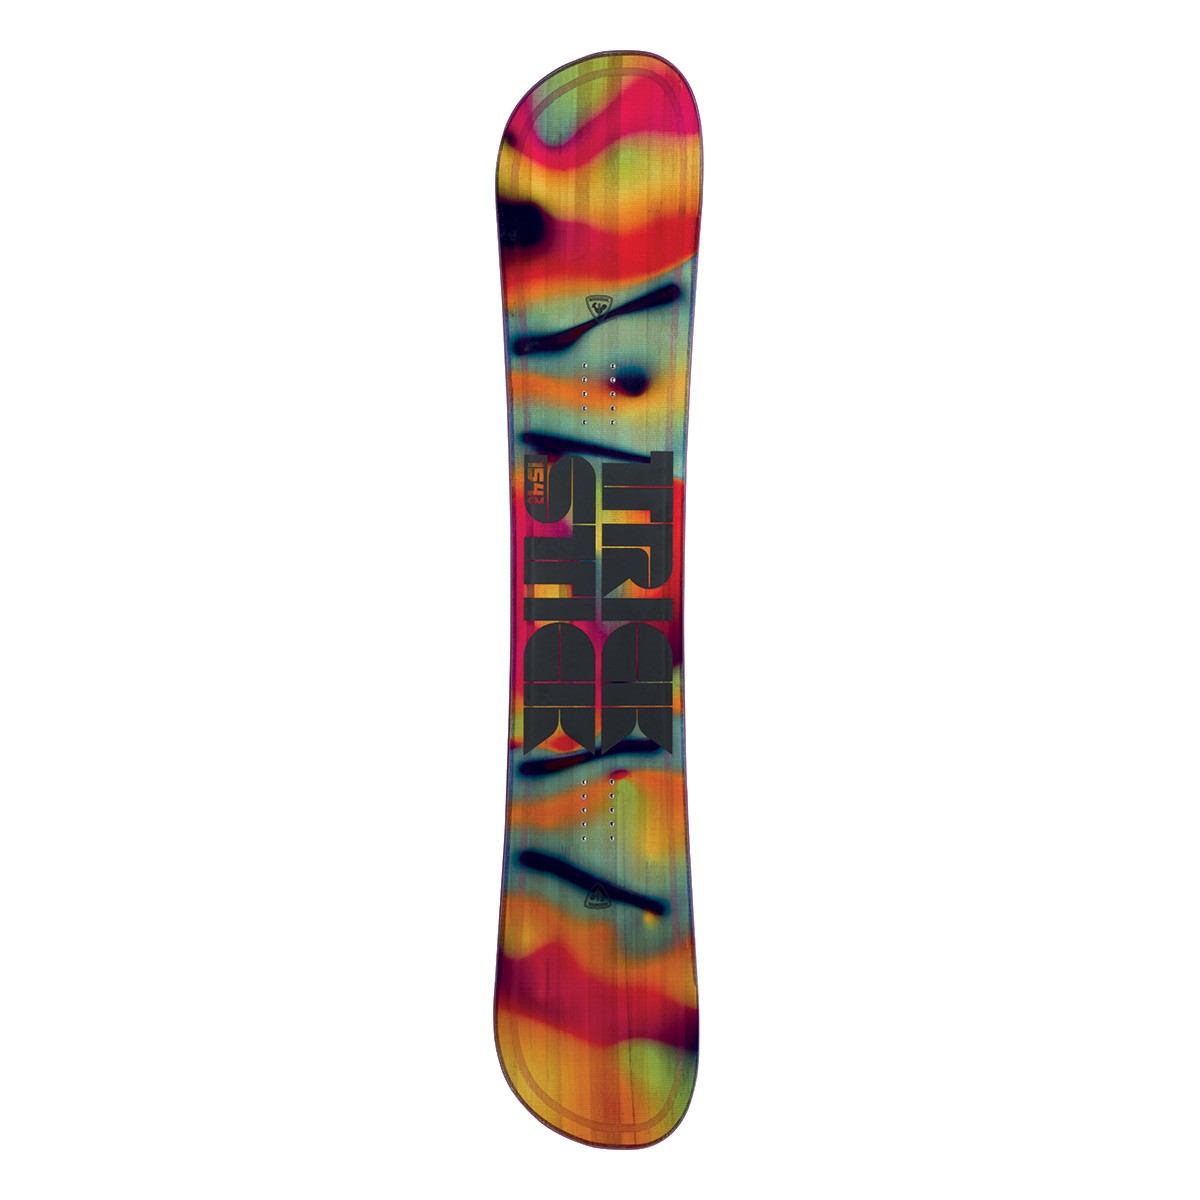  Snowboard Rossignol Trickstick wide (Colore: rosso fantasia, Taglia: 158) 